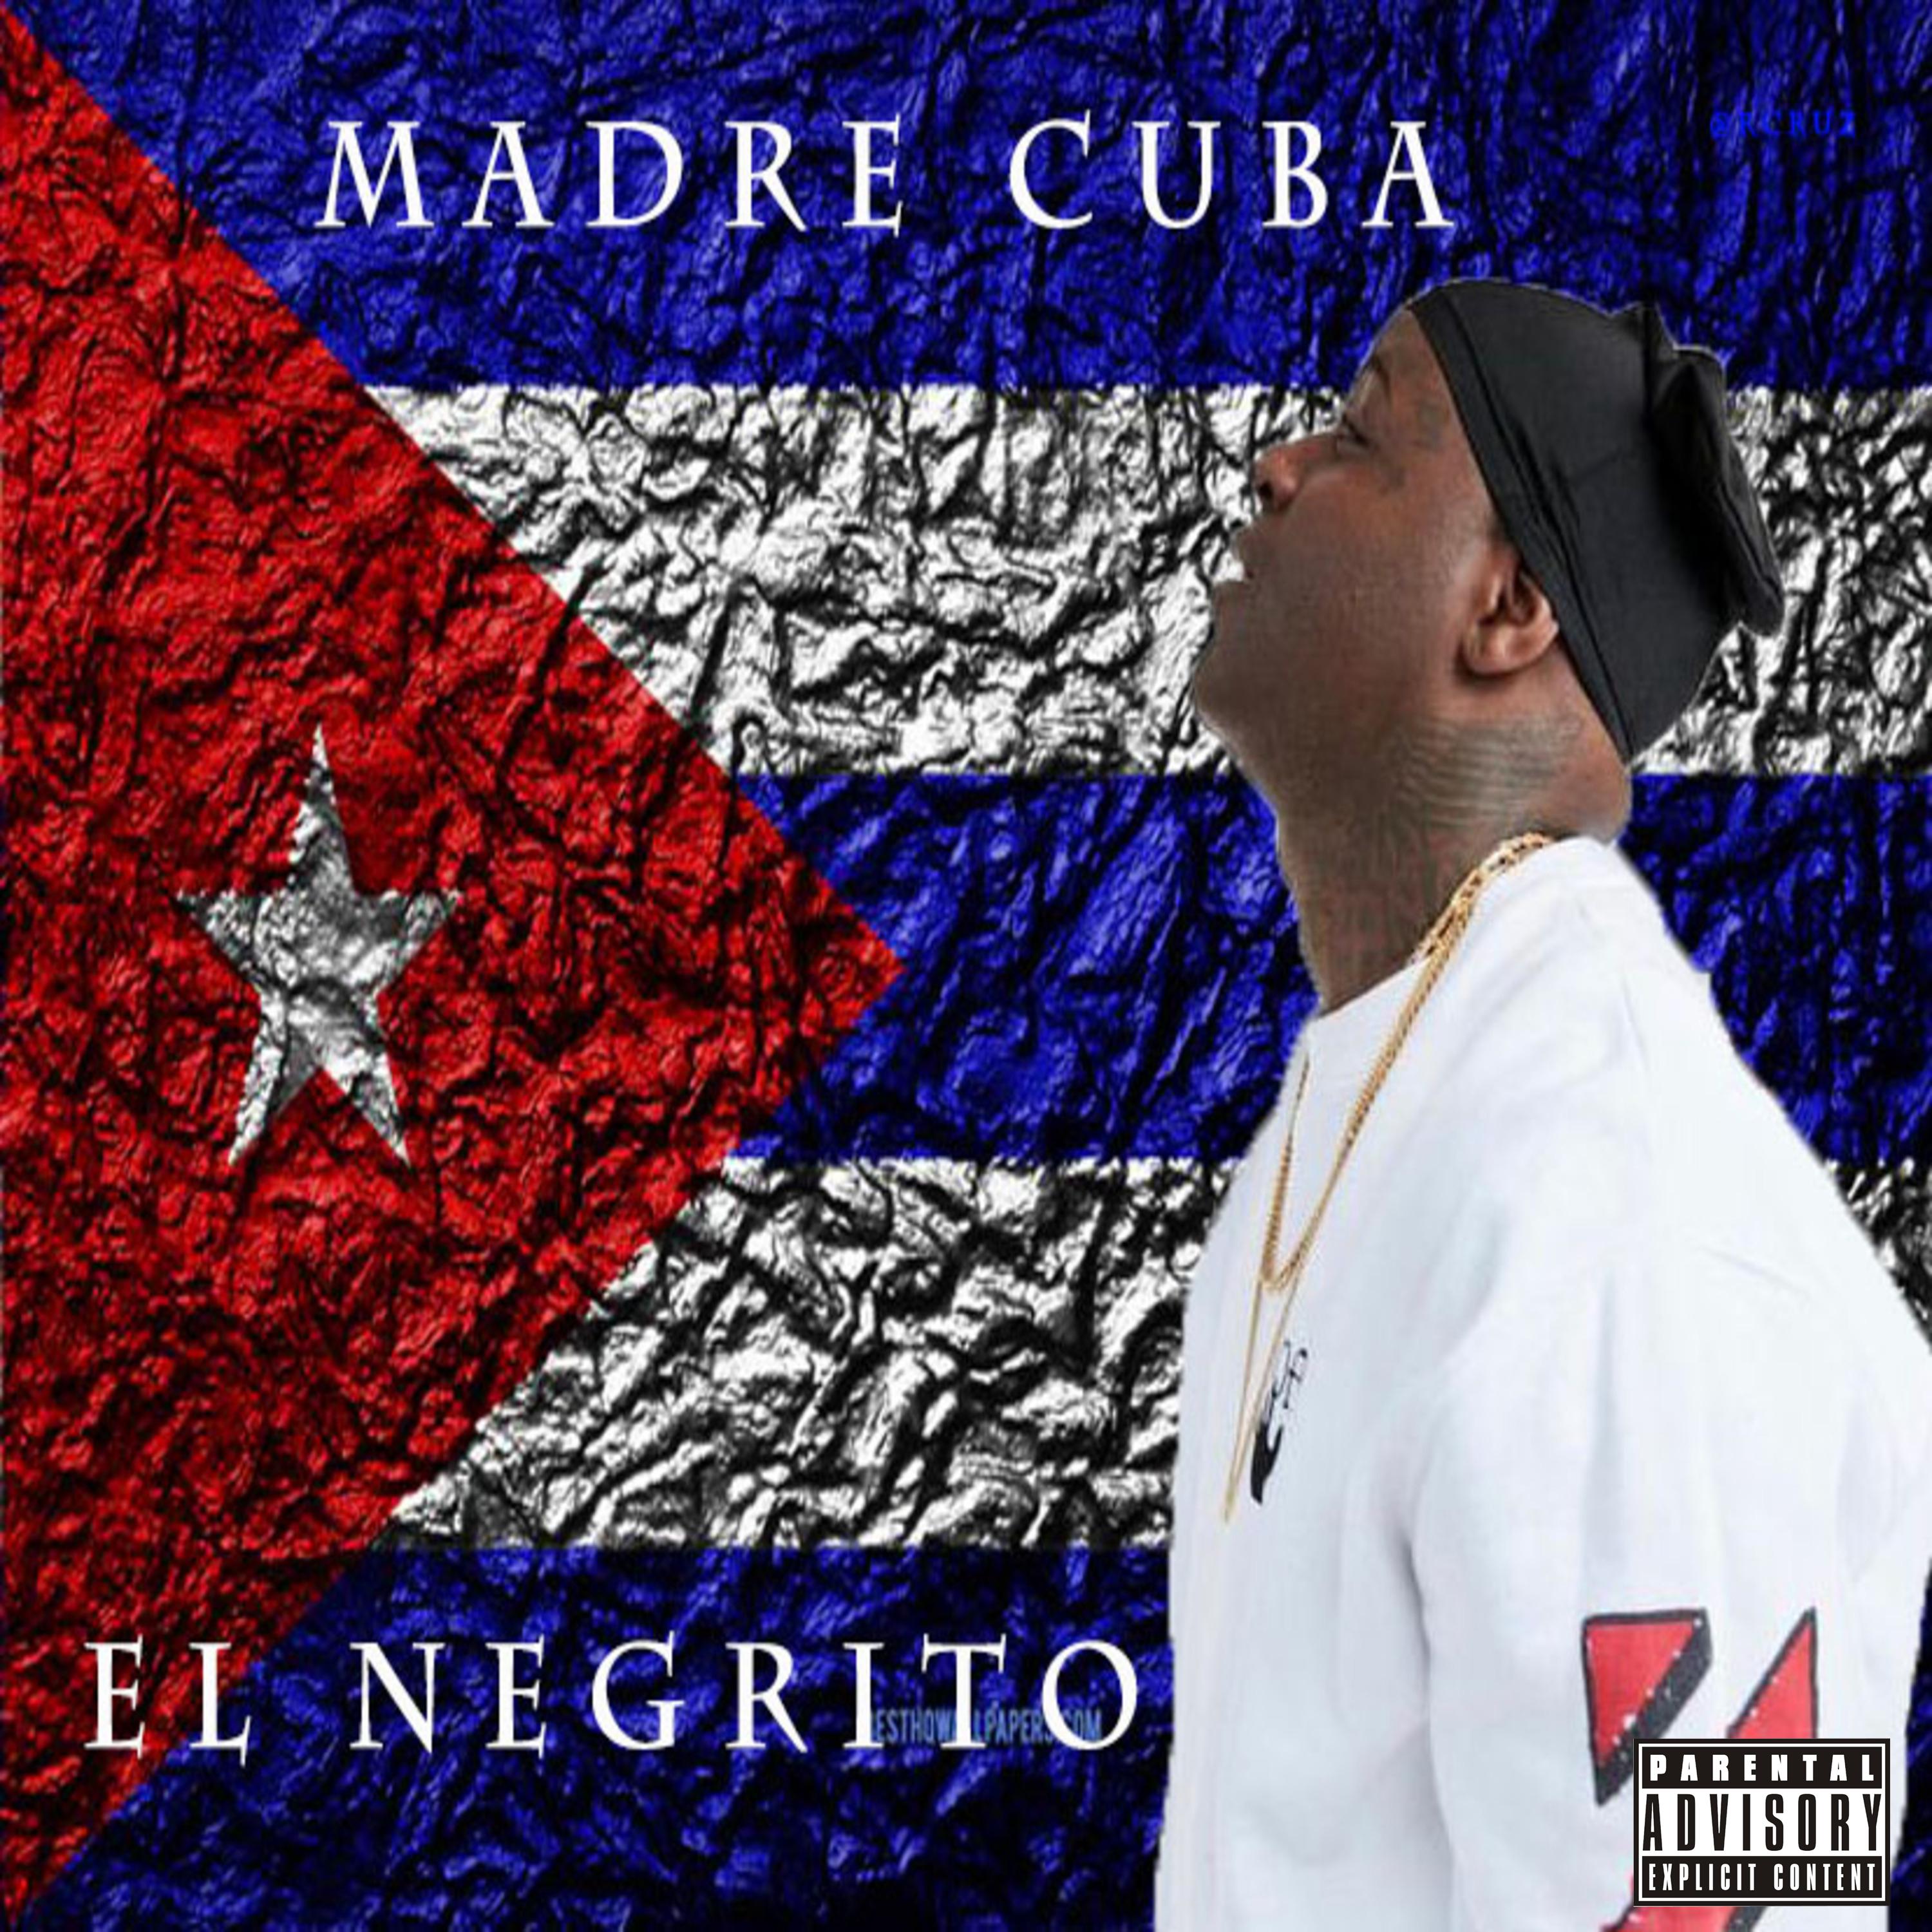 El Negrito - Madre Cuba